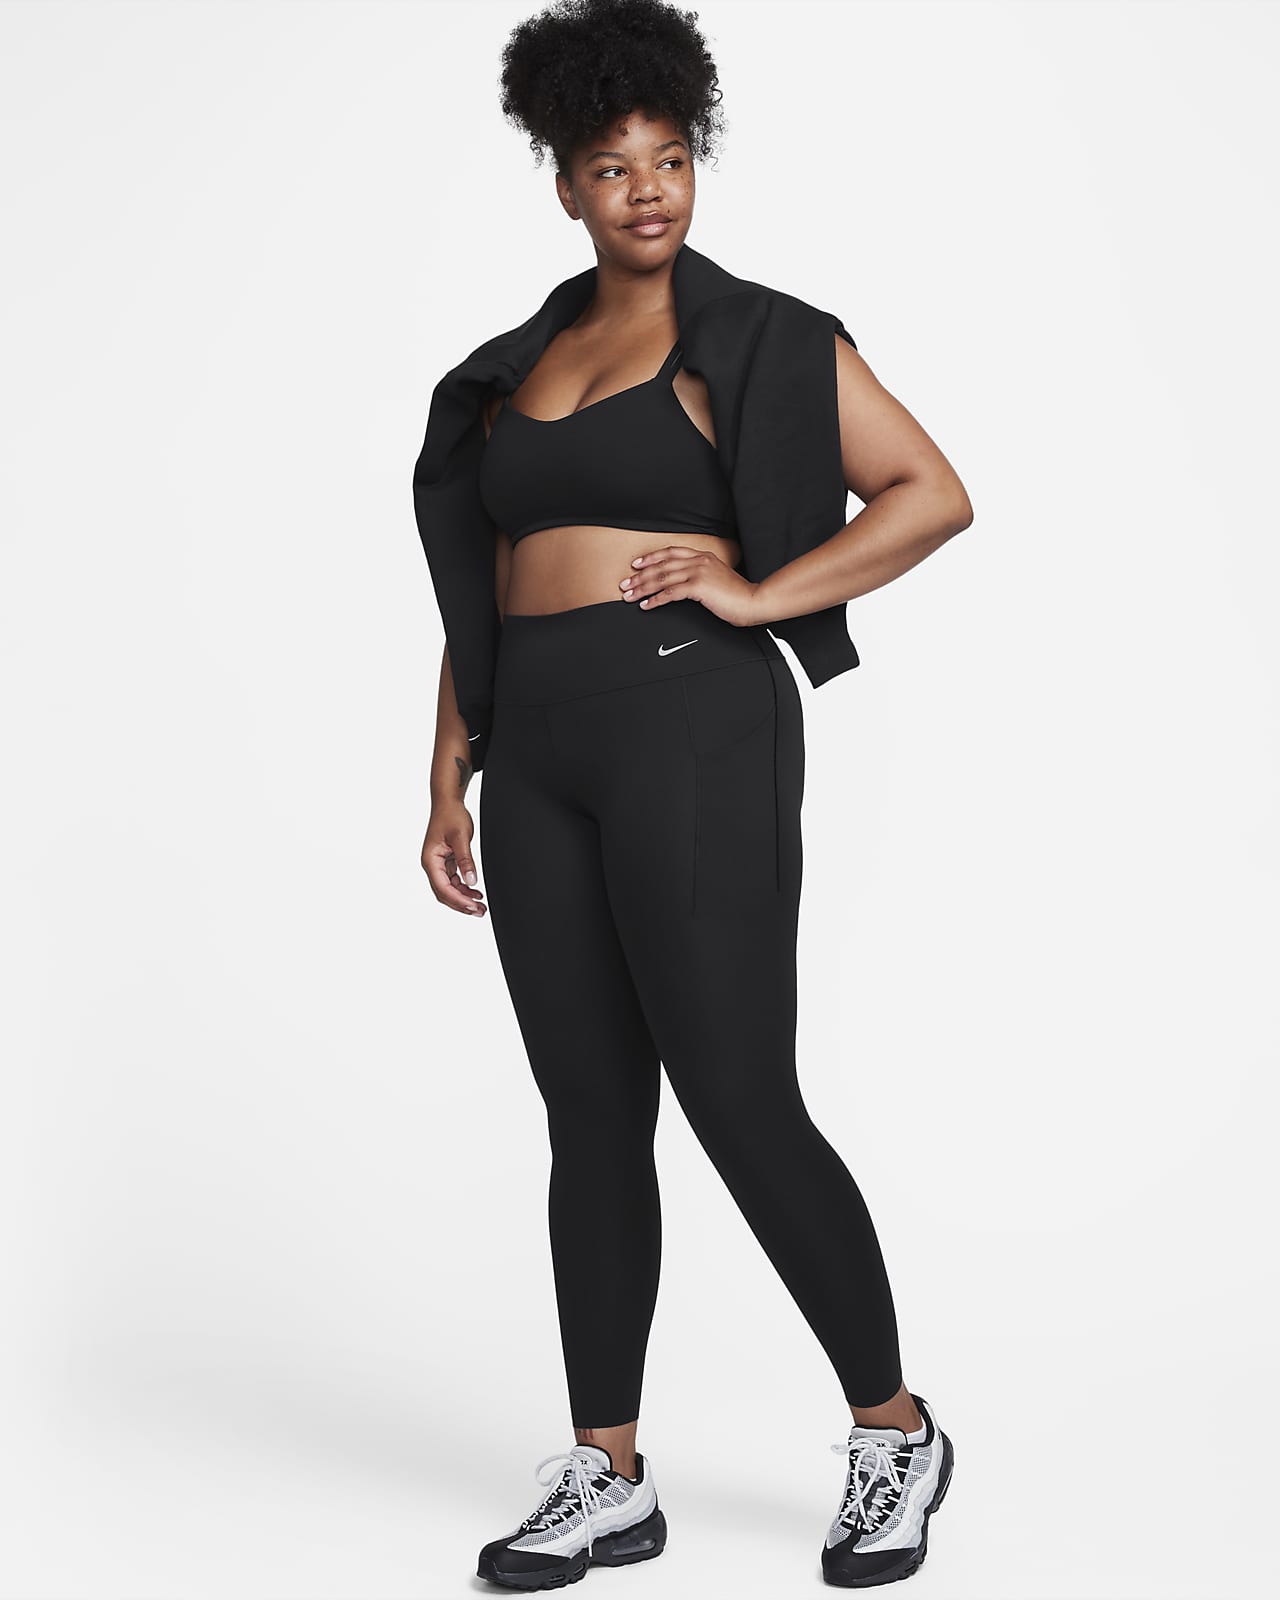 Γυναικείο κολάν μεσαίου ύψους σε κανονικό μήκος με μέτρια στήριξη και τσέπες Nike Universa